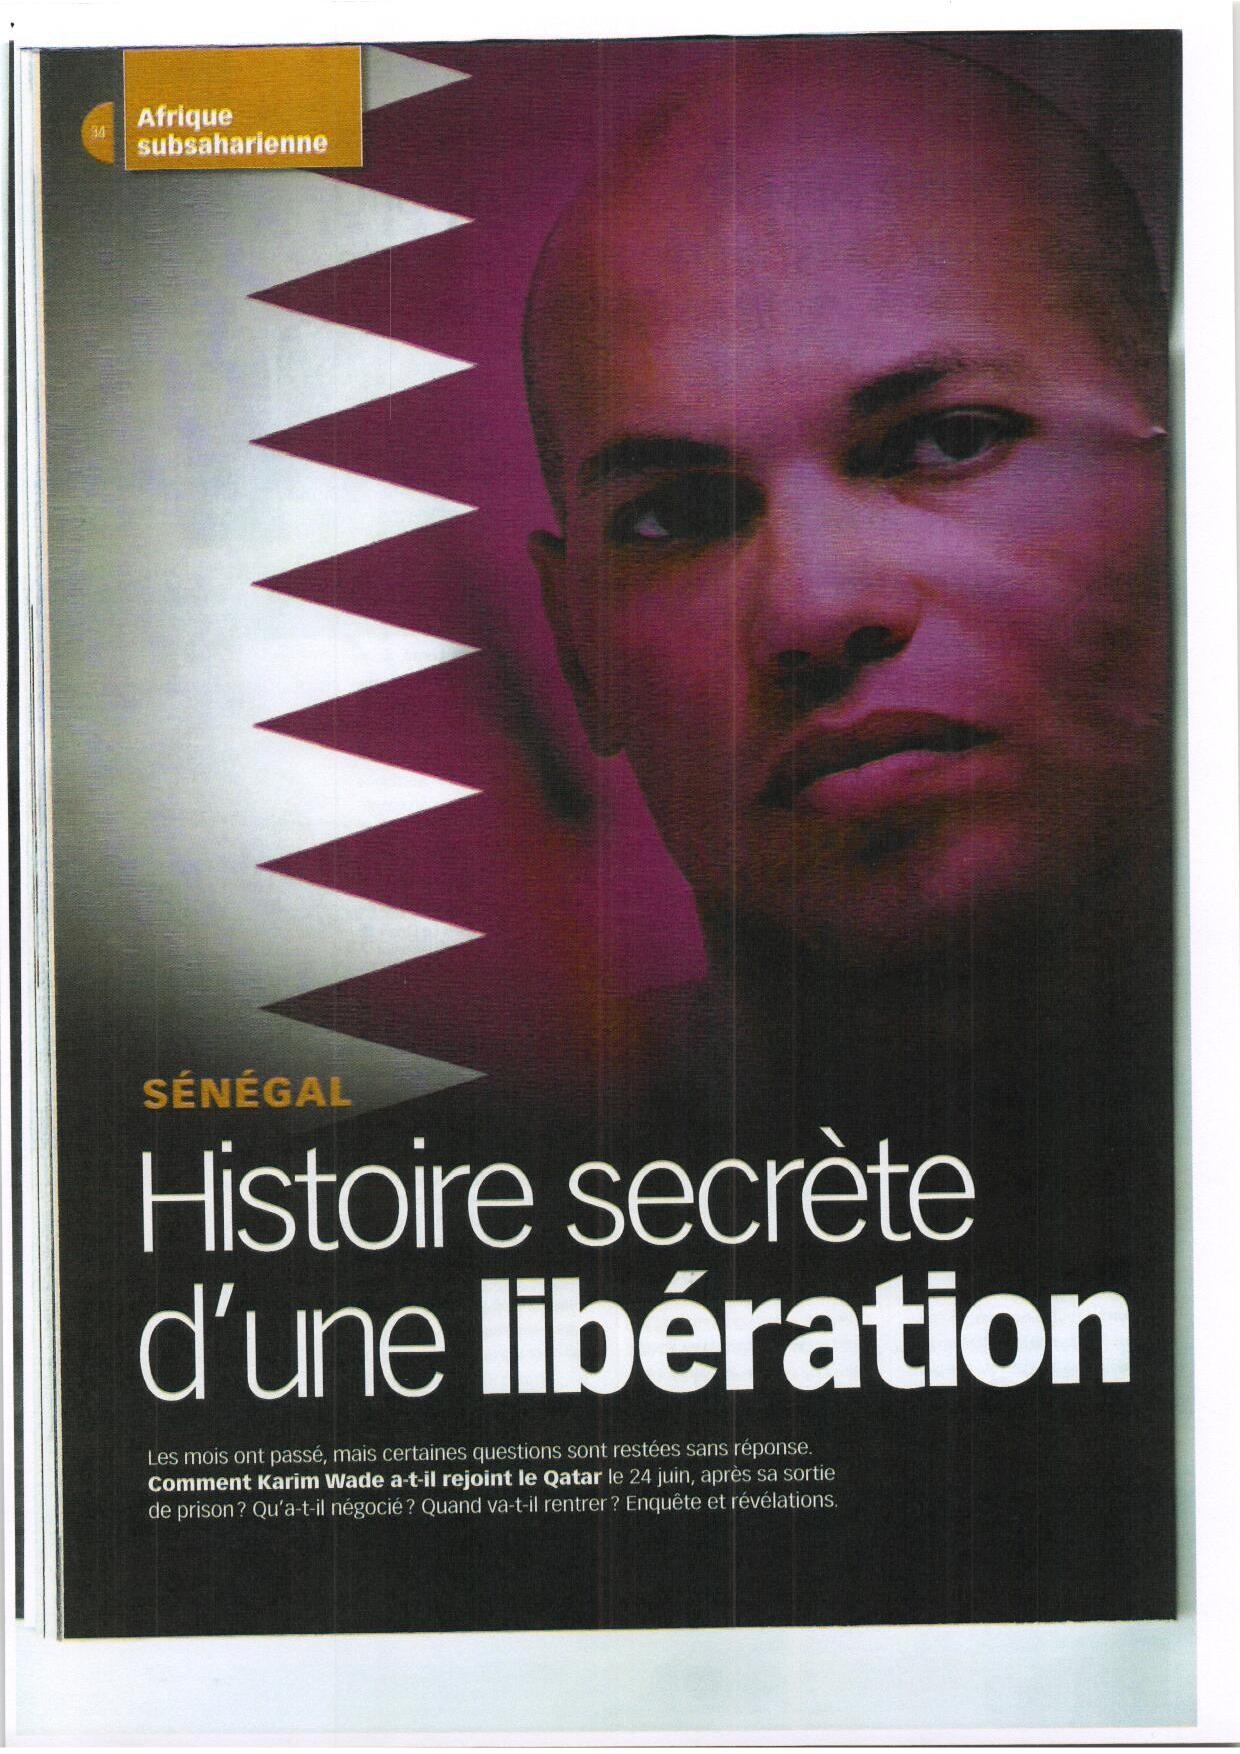 Karim Wade, mon candidat en exil …forcé à Doha ? (Par Hawa Abdoul BA)